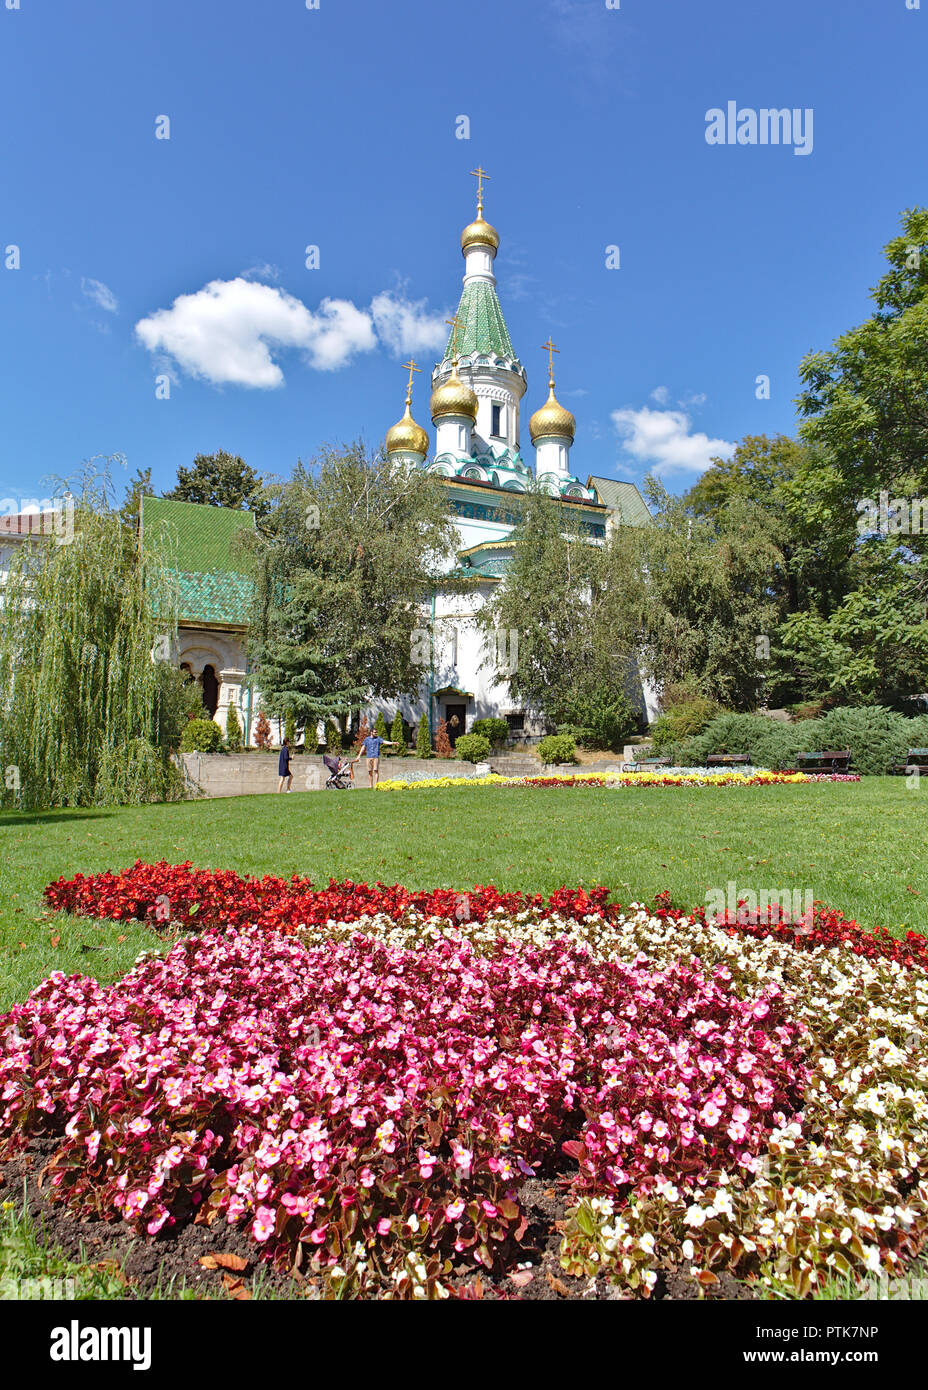 Vue de l'Église russe avec jardin de fleurs rose en premier plan Banque D'Images